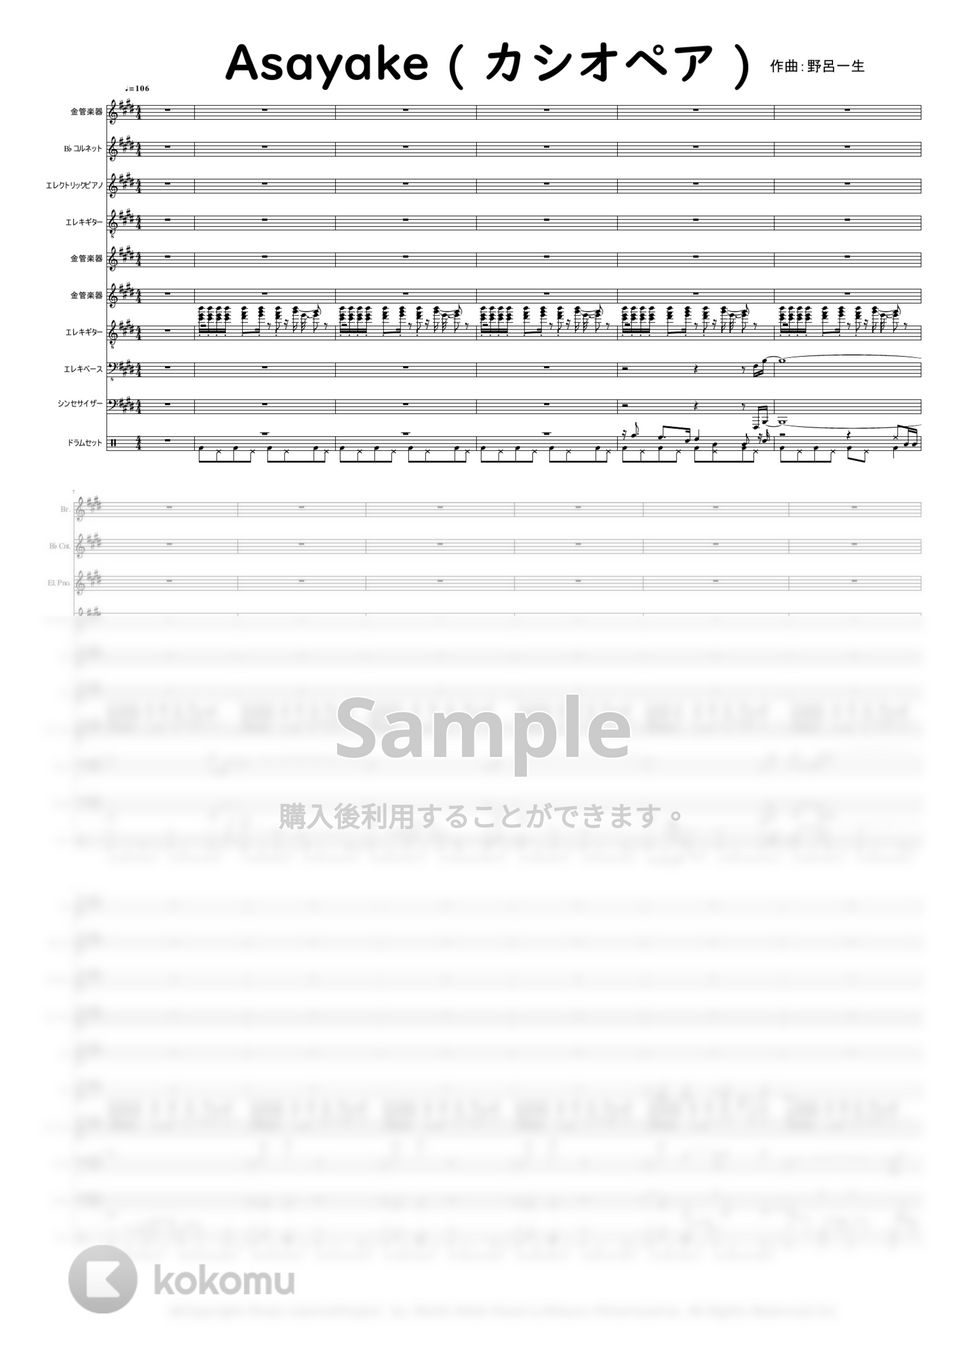 カシオペア (CASIOPEA) 作曲:野呂一生 - ASAYAKE by Mitsuru Minamiyama